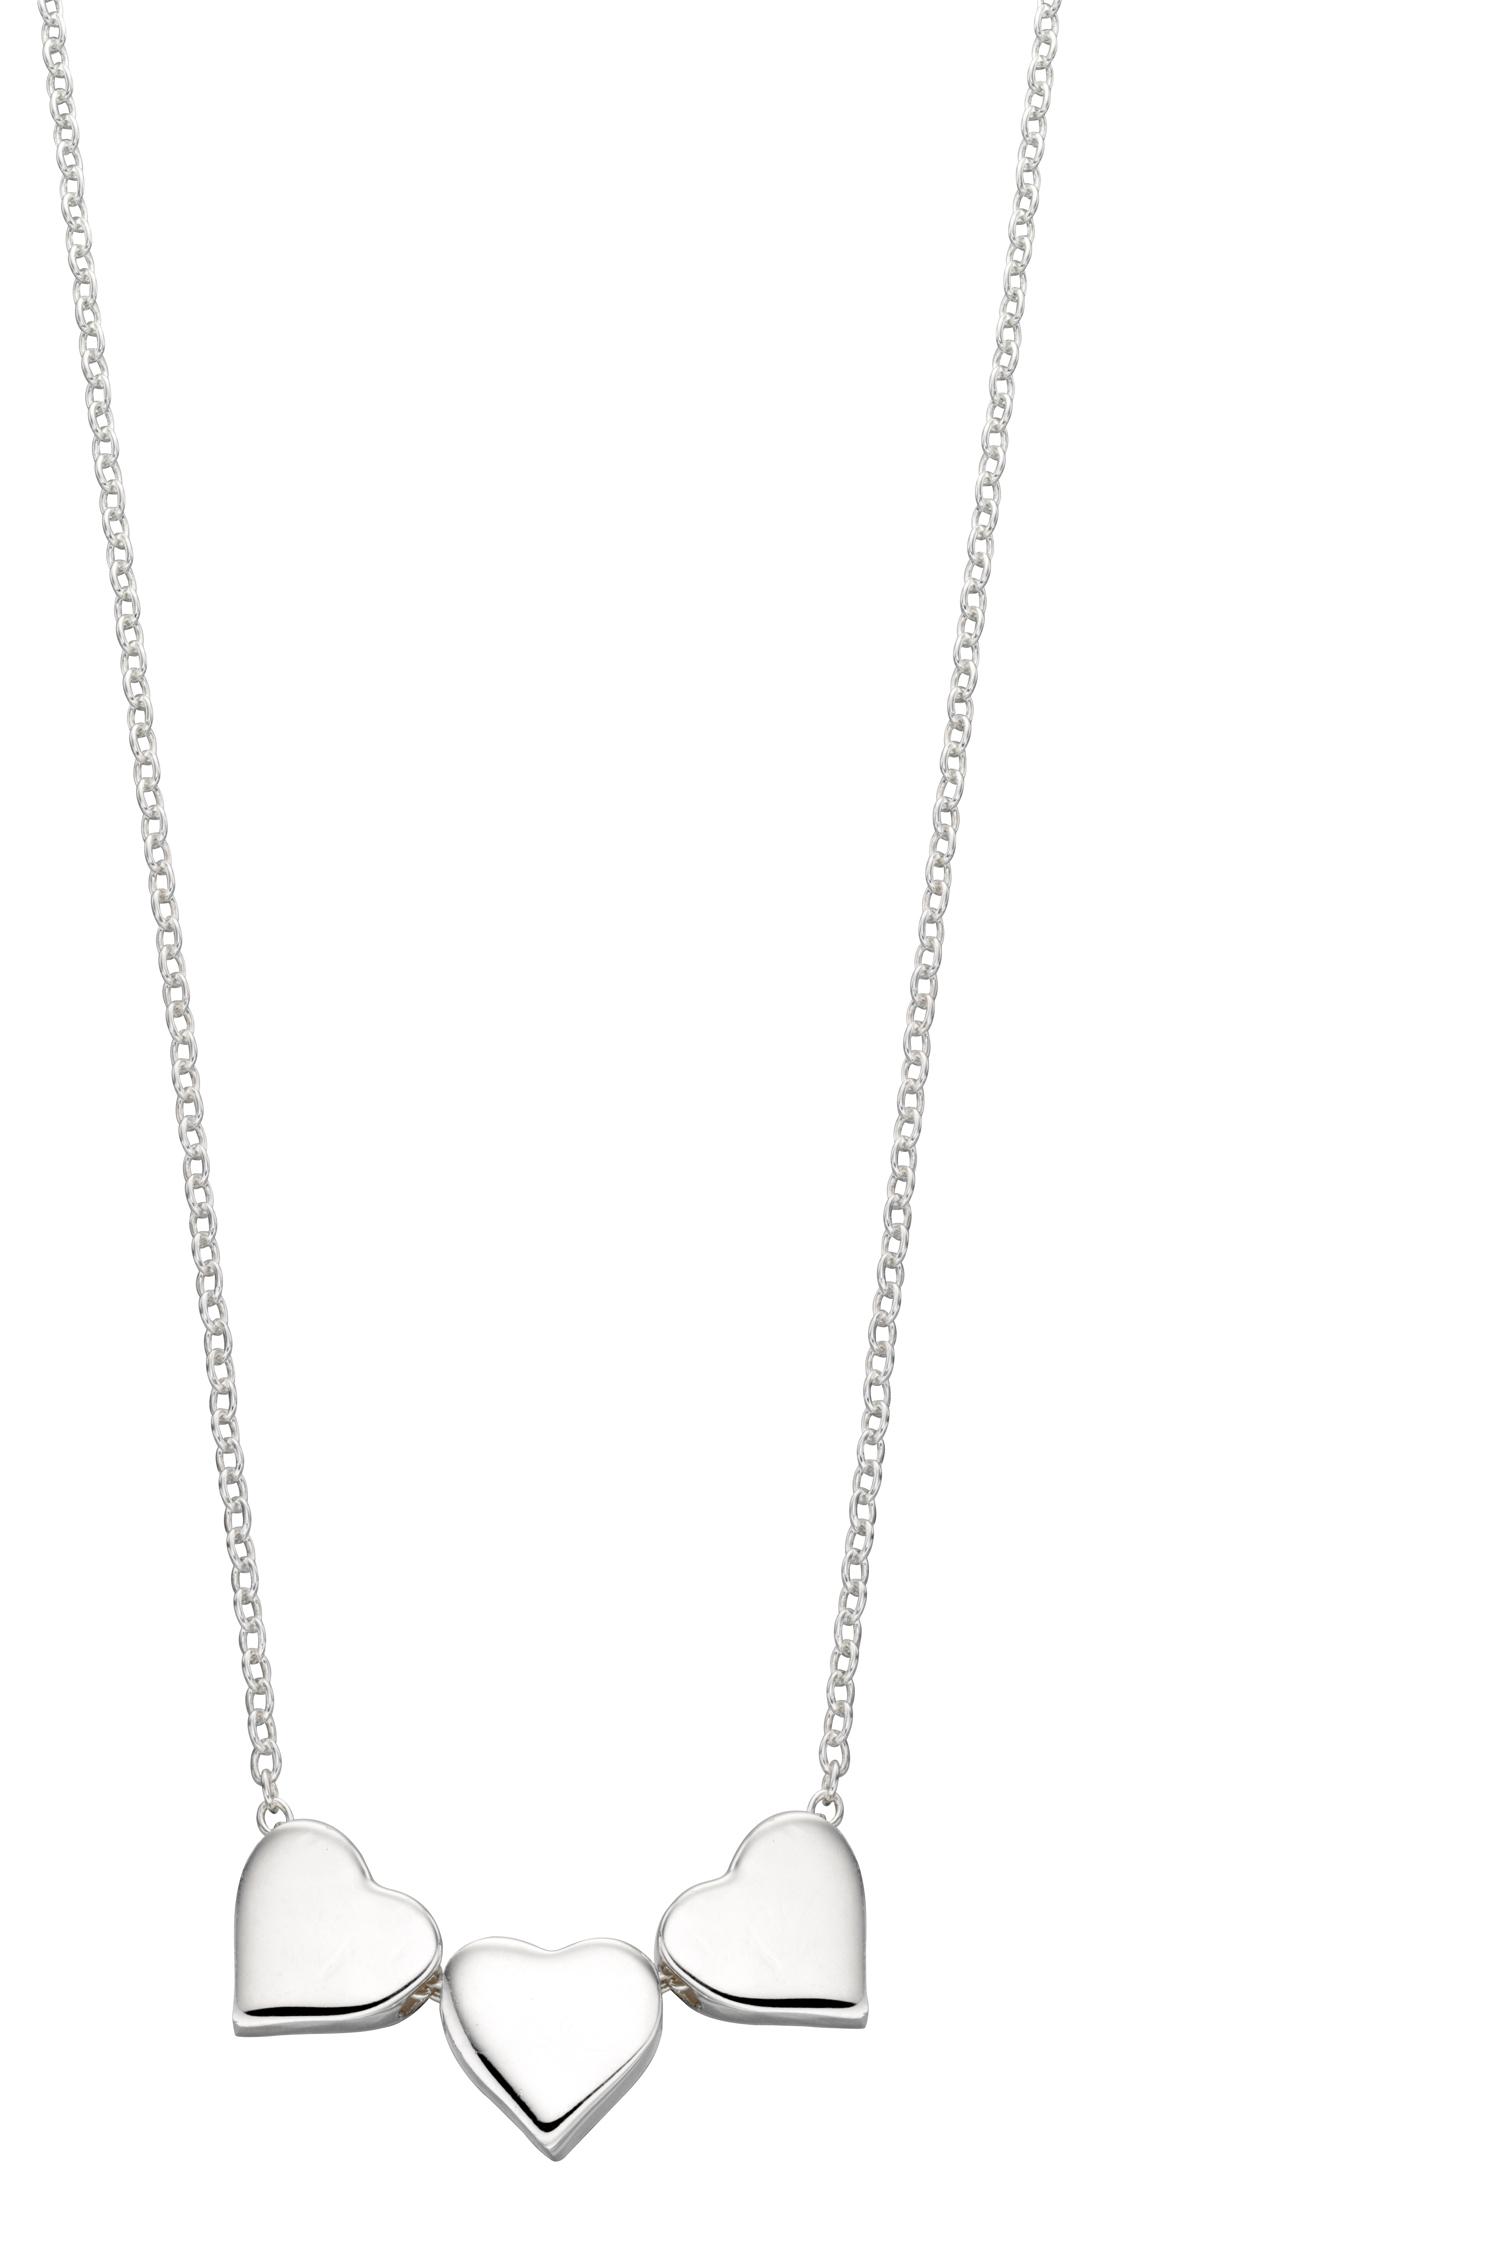 Tiffany & Co Silver Triple Heart Necklace Pendant 17.9 inch Chain Rare Gift  Love